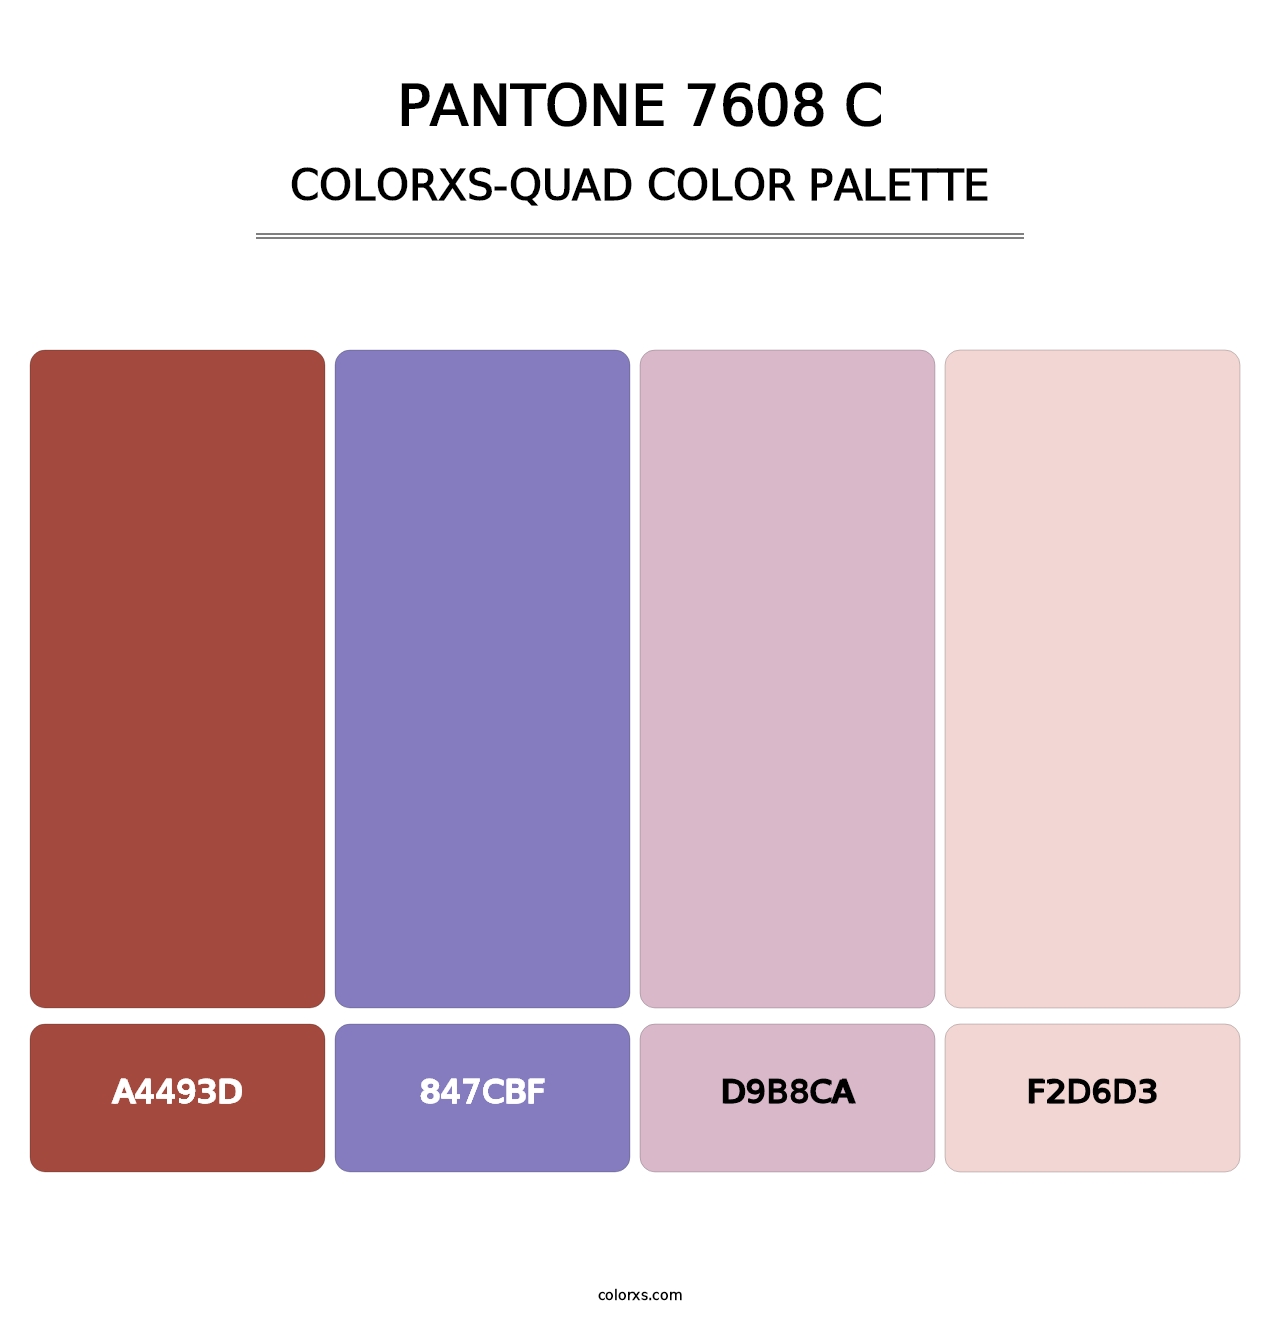 PANTONE 7608 C - Colorxs Quad Palette